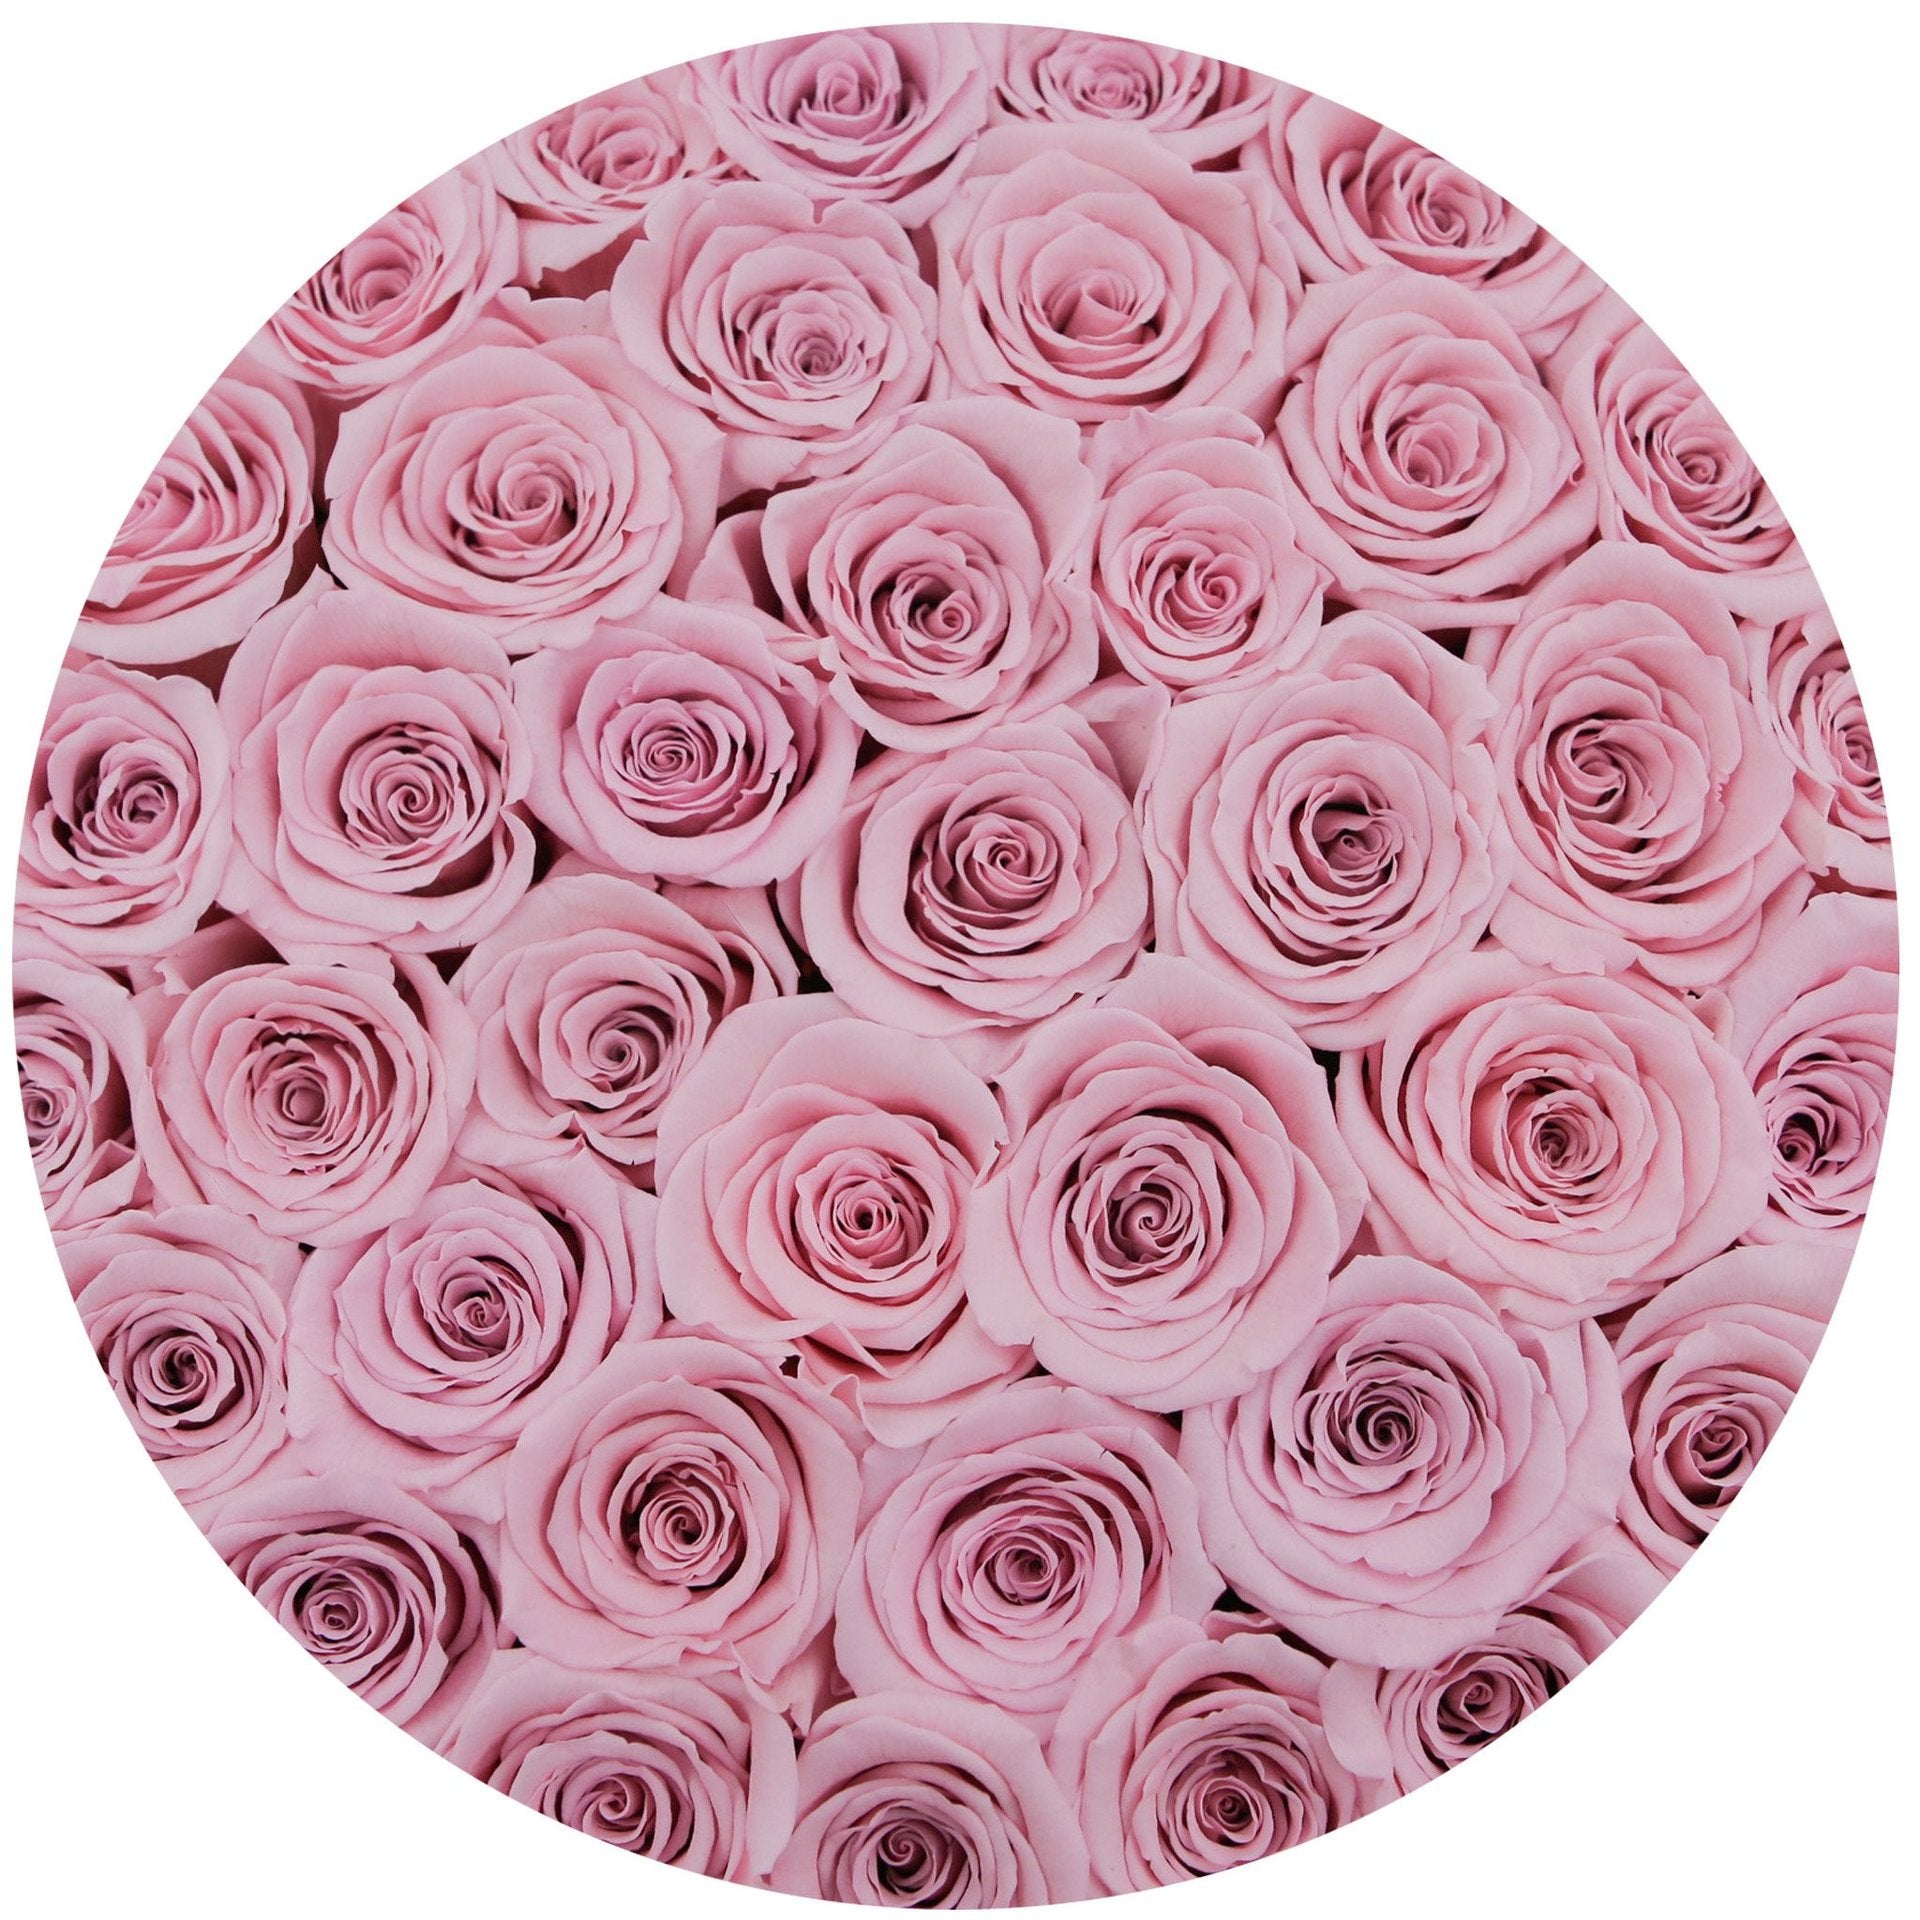 Aranjament floral cu trandafiri naturali roz în cutie medie